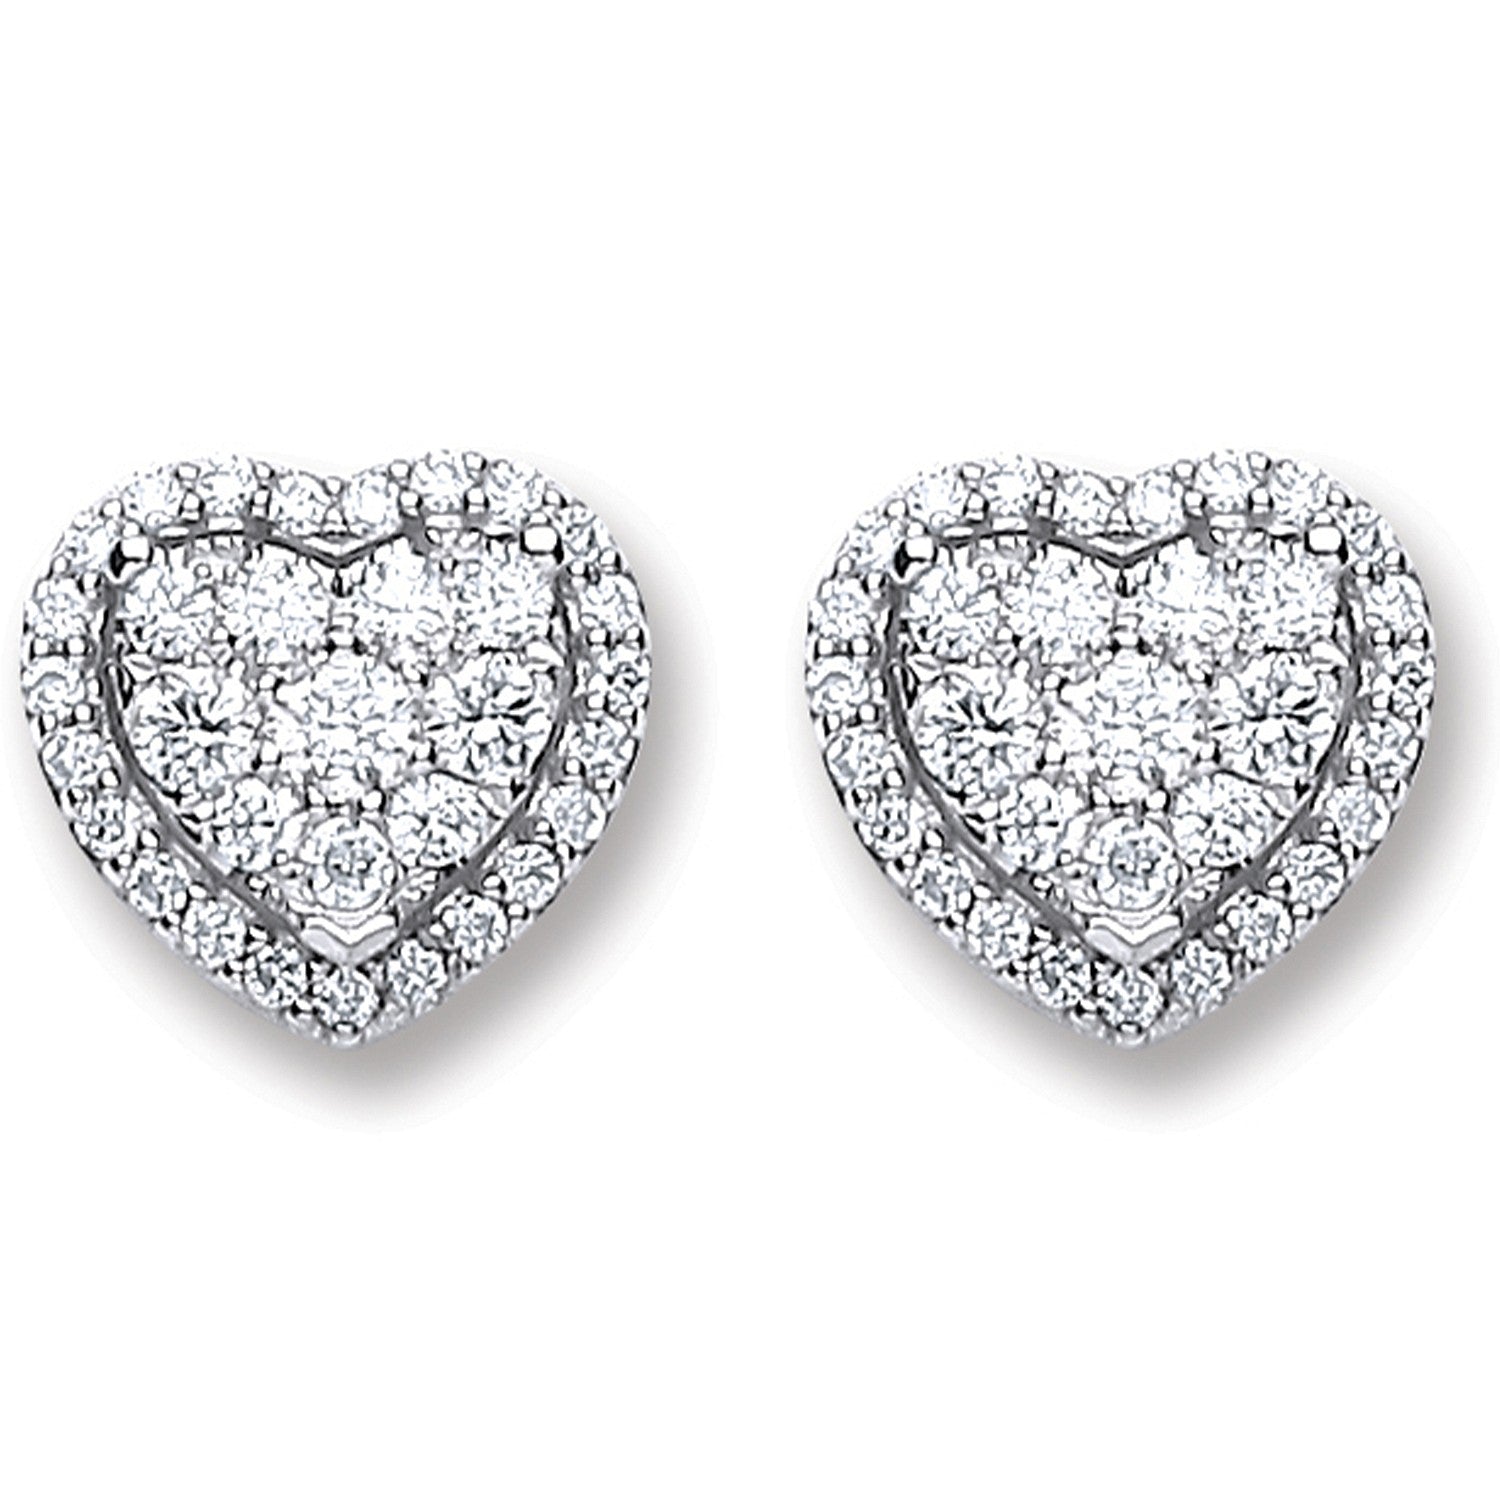 Nnamdi 18k White Gold 0.45ct Diamond Heart Stud Earrings